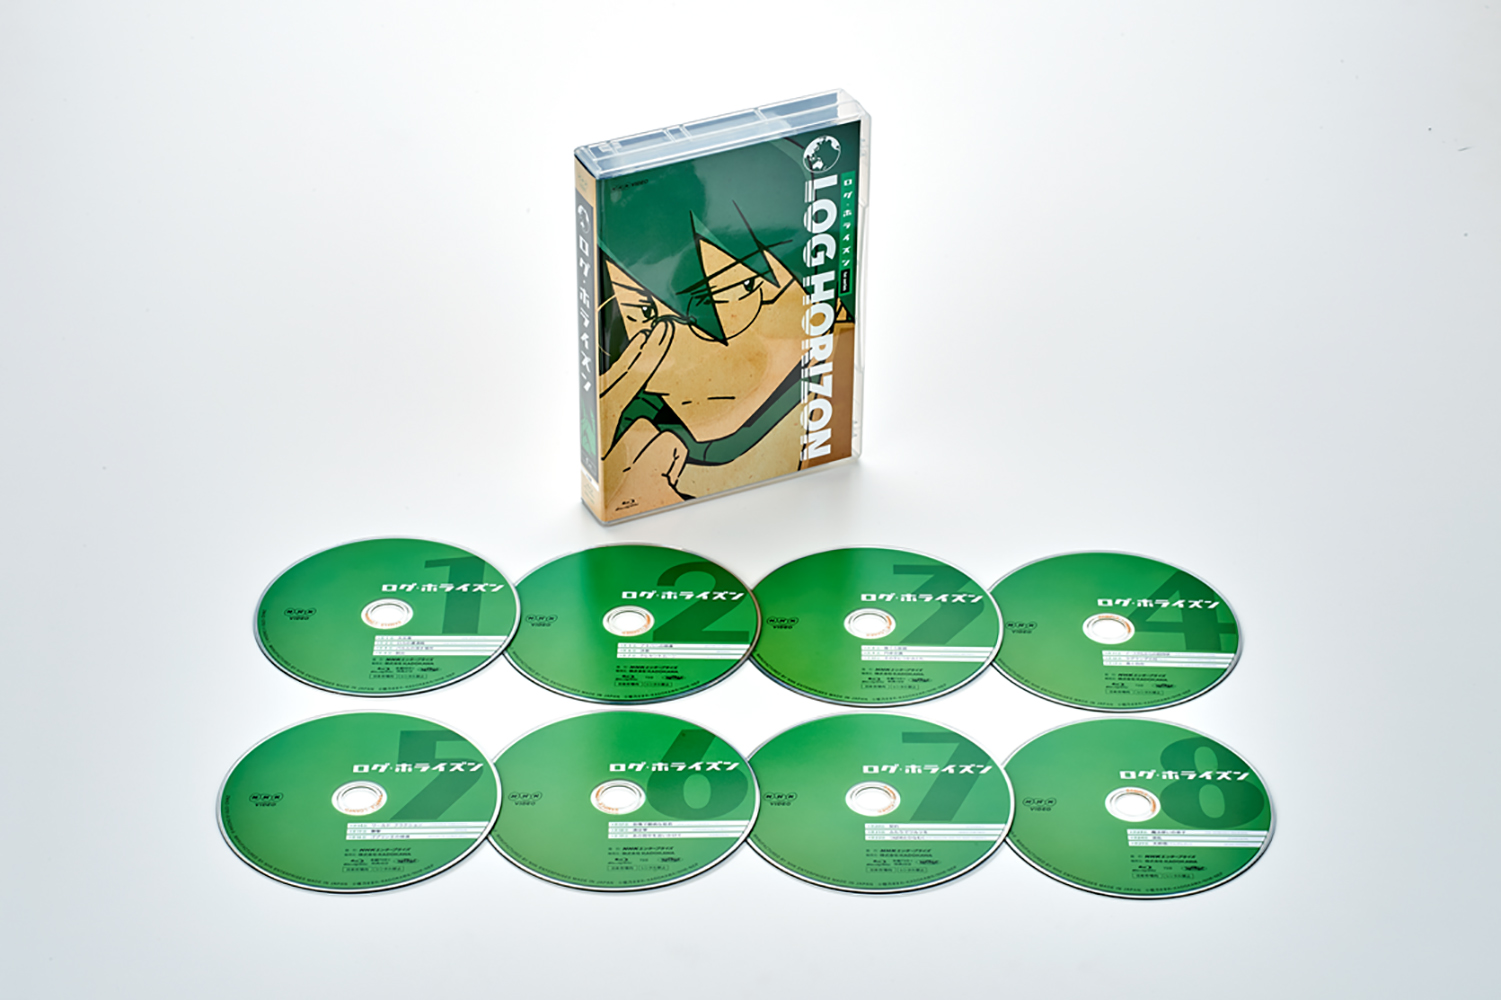 ログ・ホライズン 第1シリーズ Blu-ray BOX コンパクトエディション【Blu-ray】画像